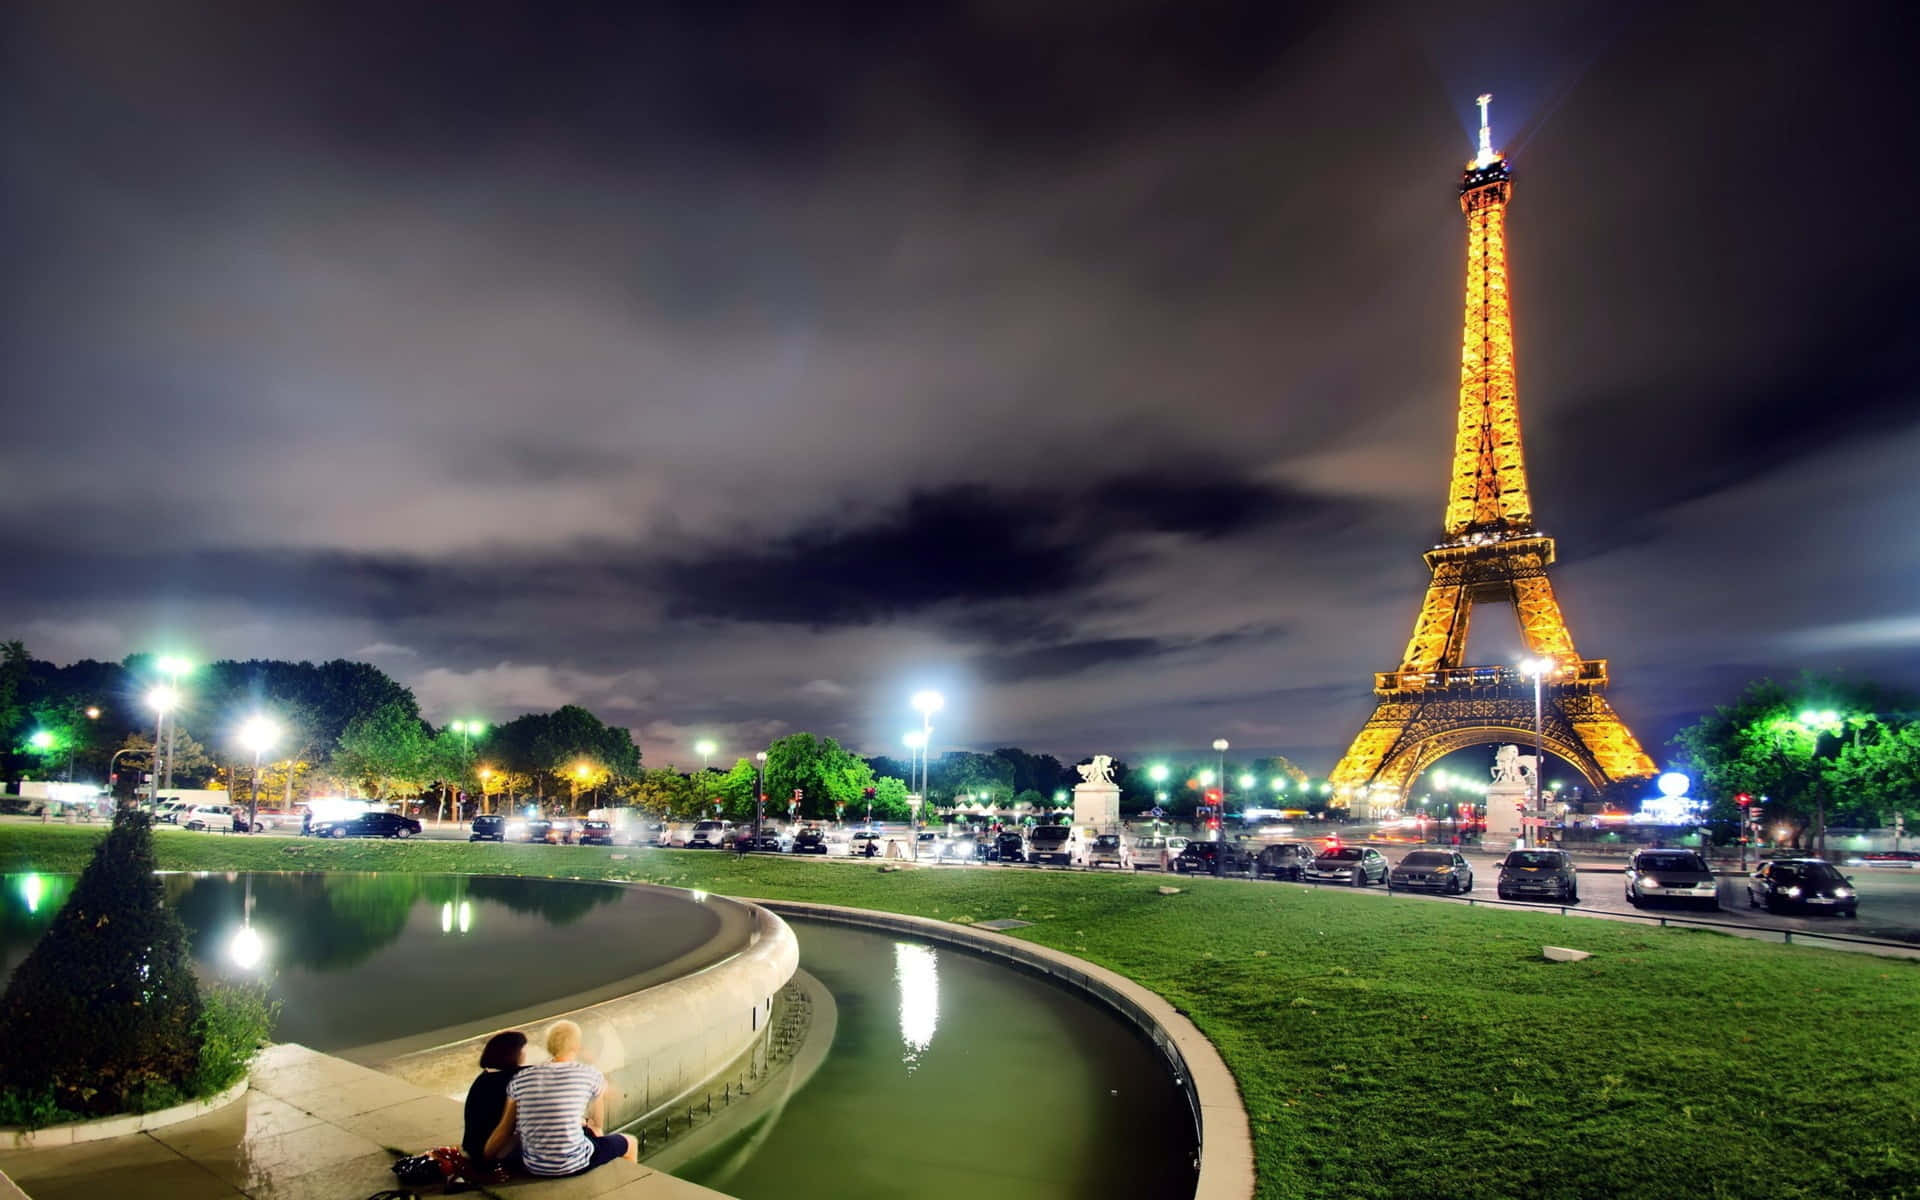 Imagendel Parque De La Torre Eiffel De Noche